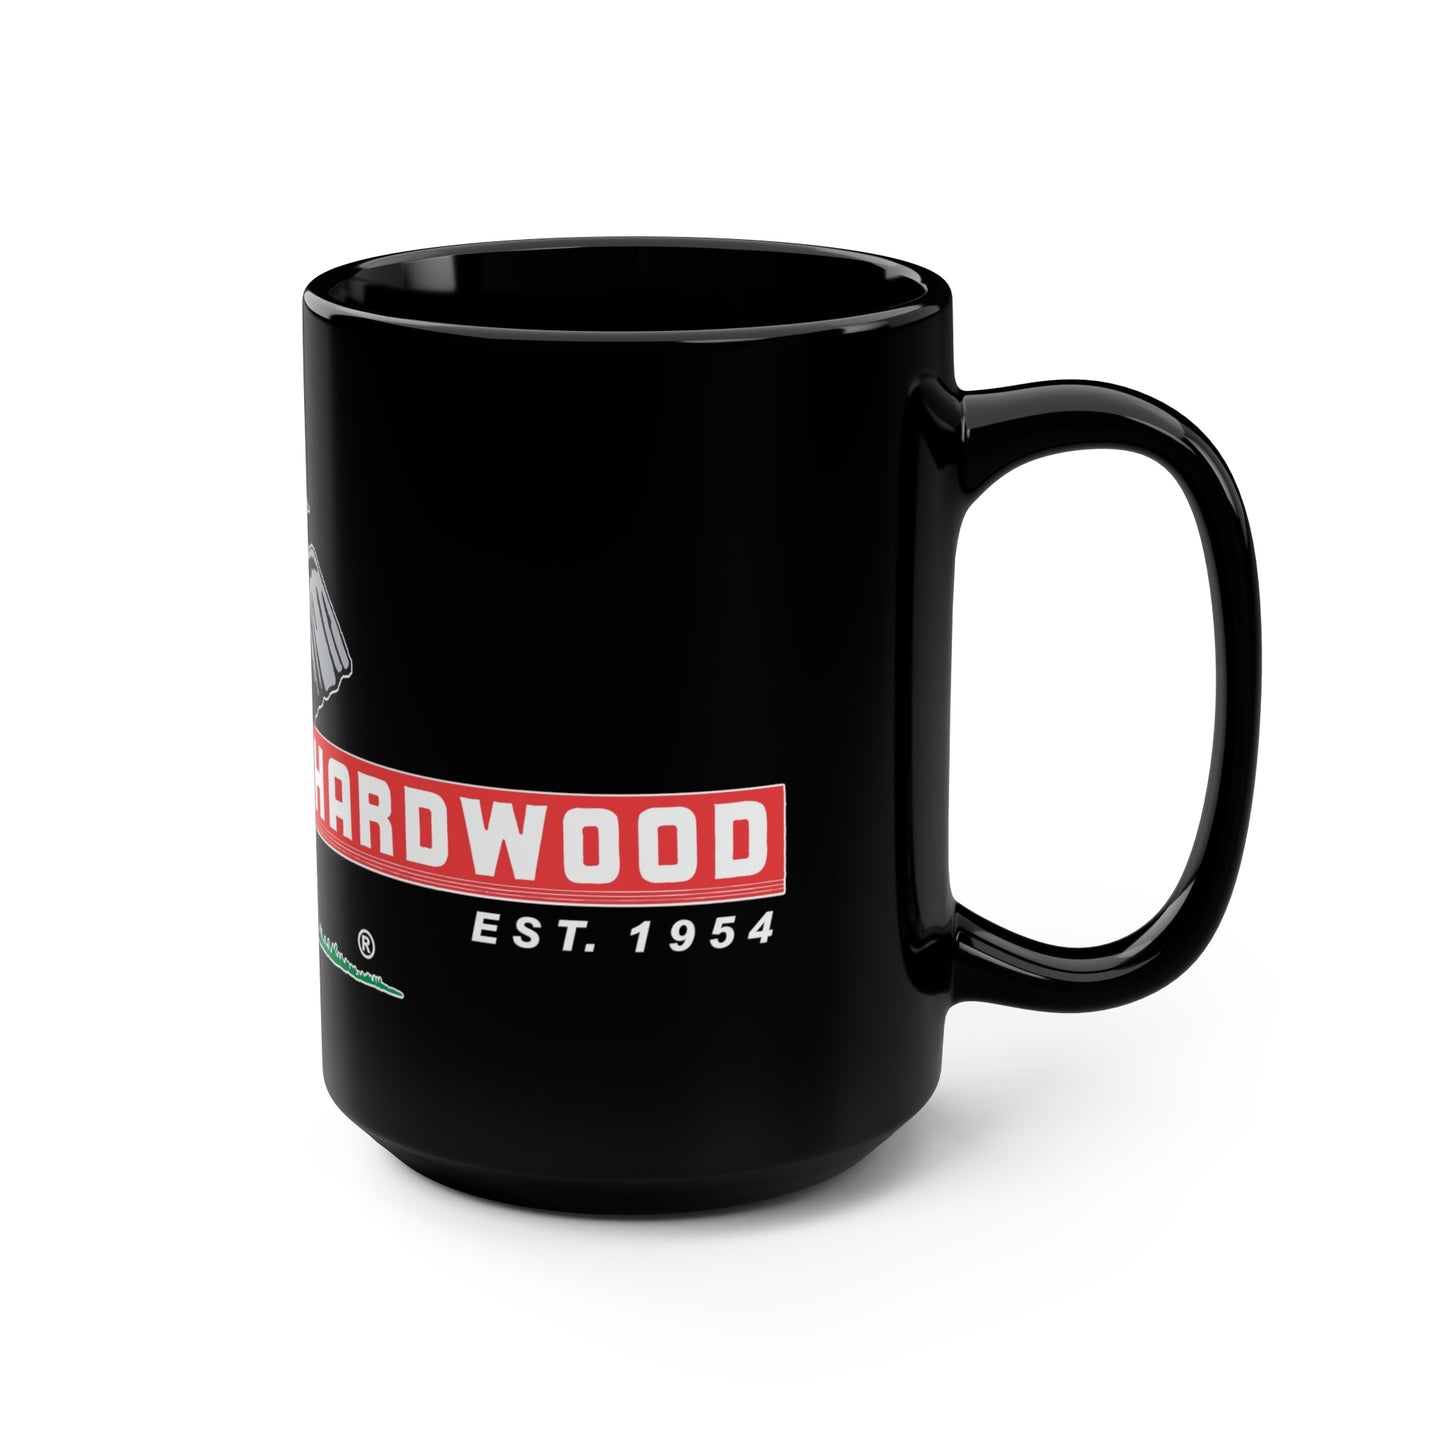 MacBeath Hardwood Black Coffee Mug, 15oz